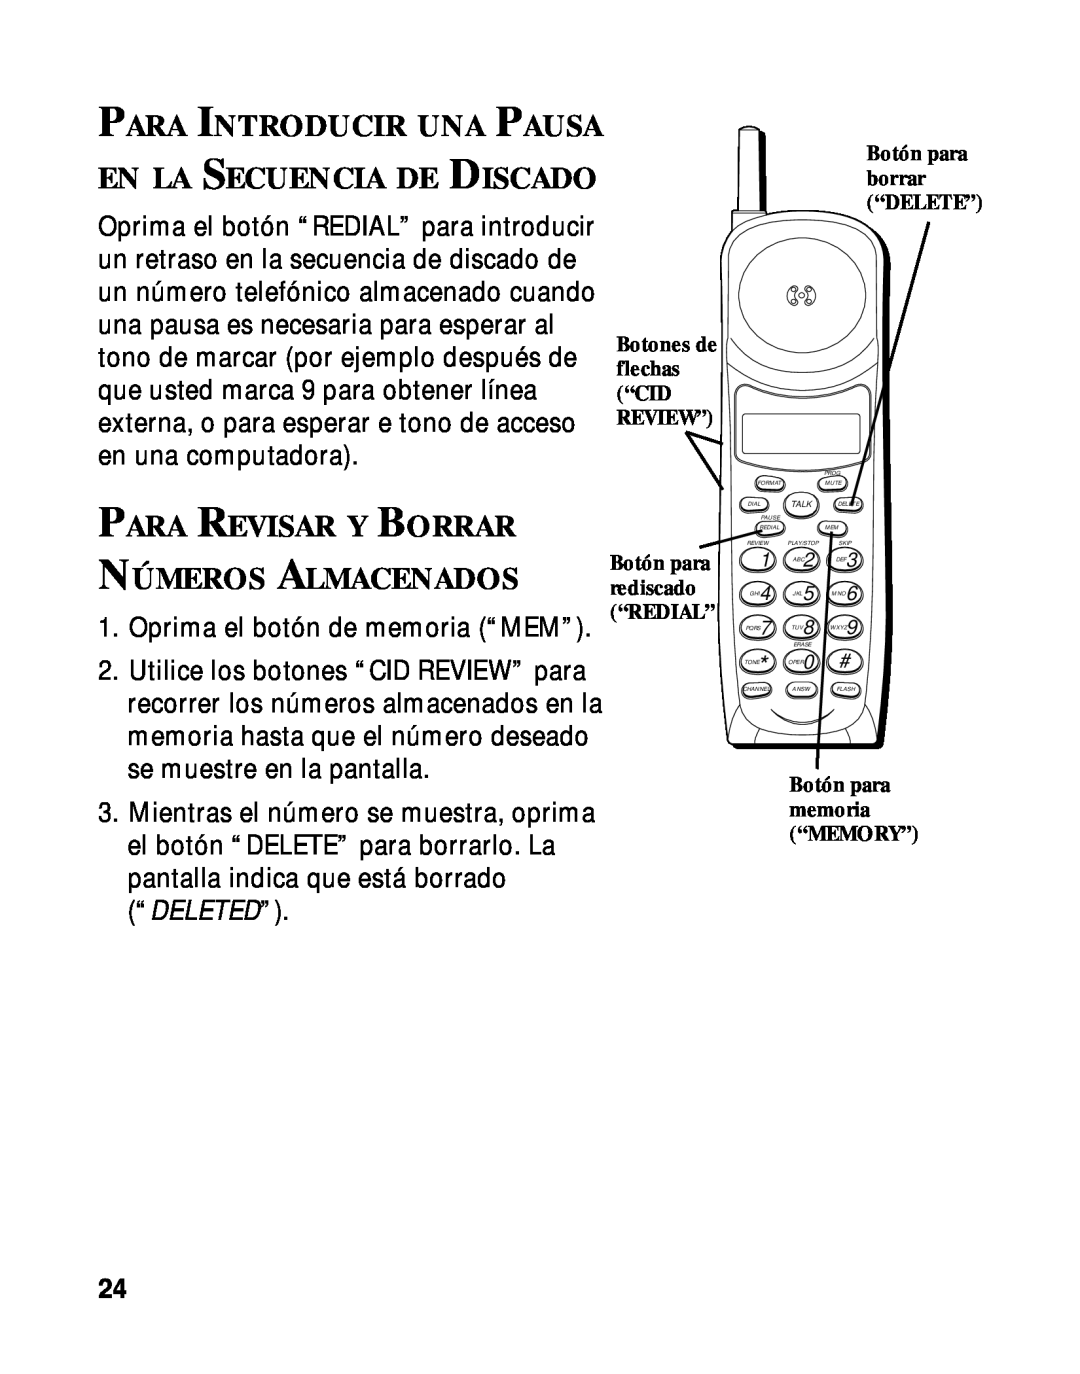 RCA 900 MHz manual Para Revisar Y Borrar, Números Almacenados 